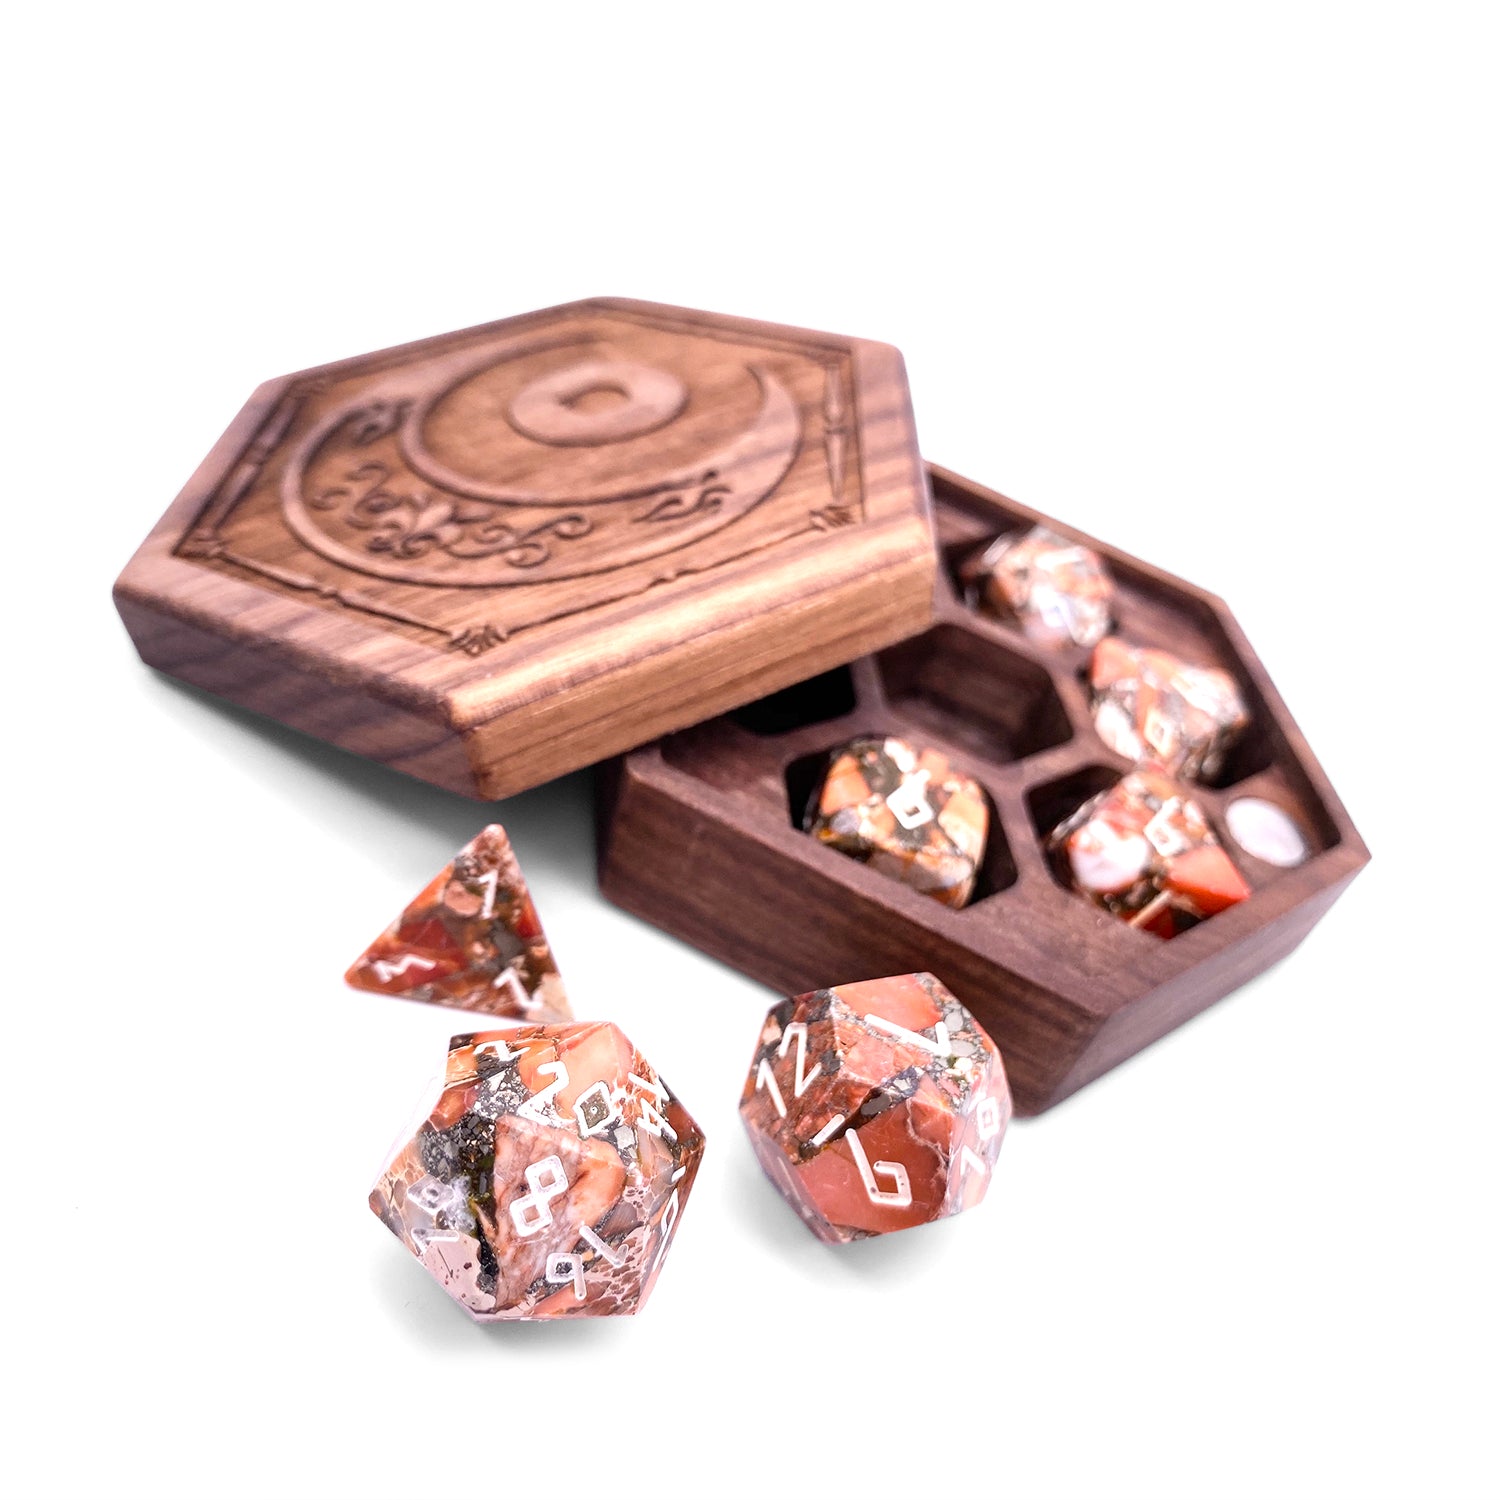 Bronzite Lapis with Orange Imperial Jasper - 7 Piece RPG Set TruStone Dice